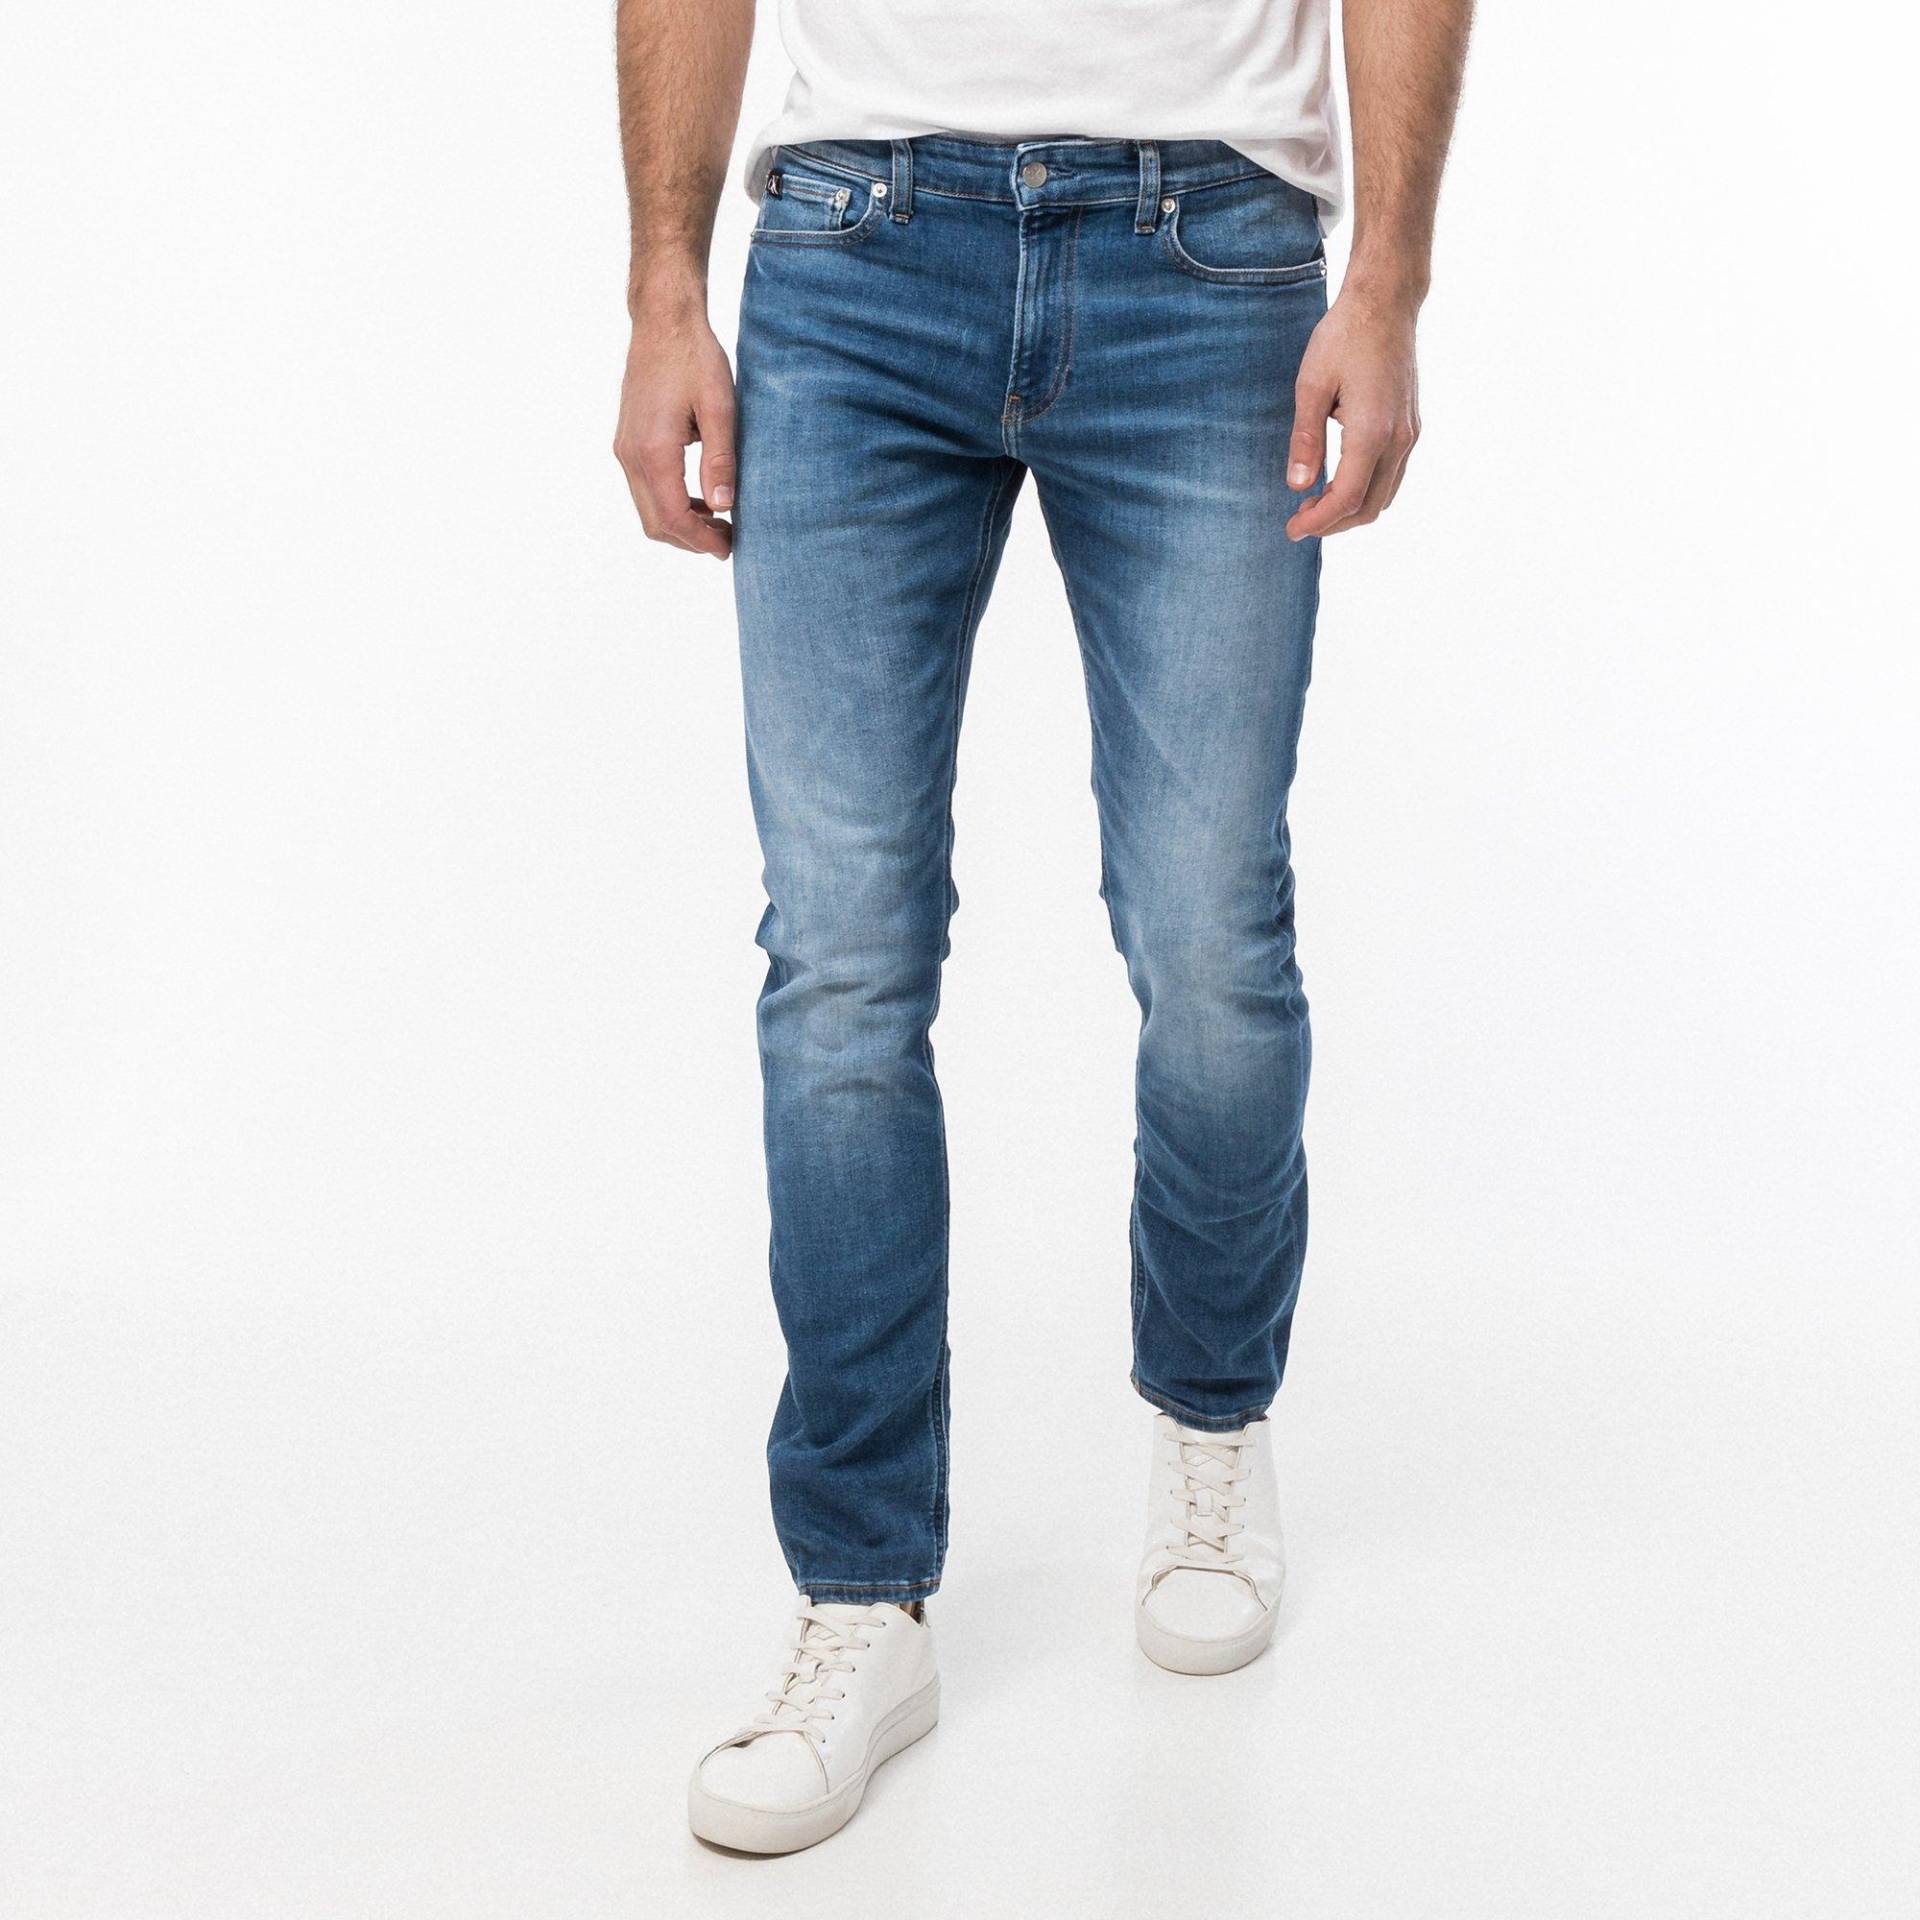 Jeans, Slim Fit Herren Blau L32/W29 von Calvin Klein Jeans